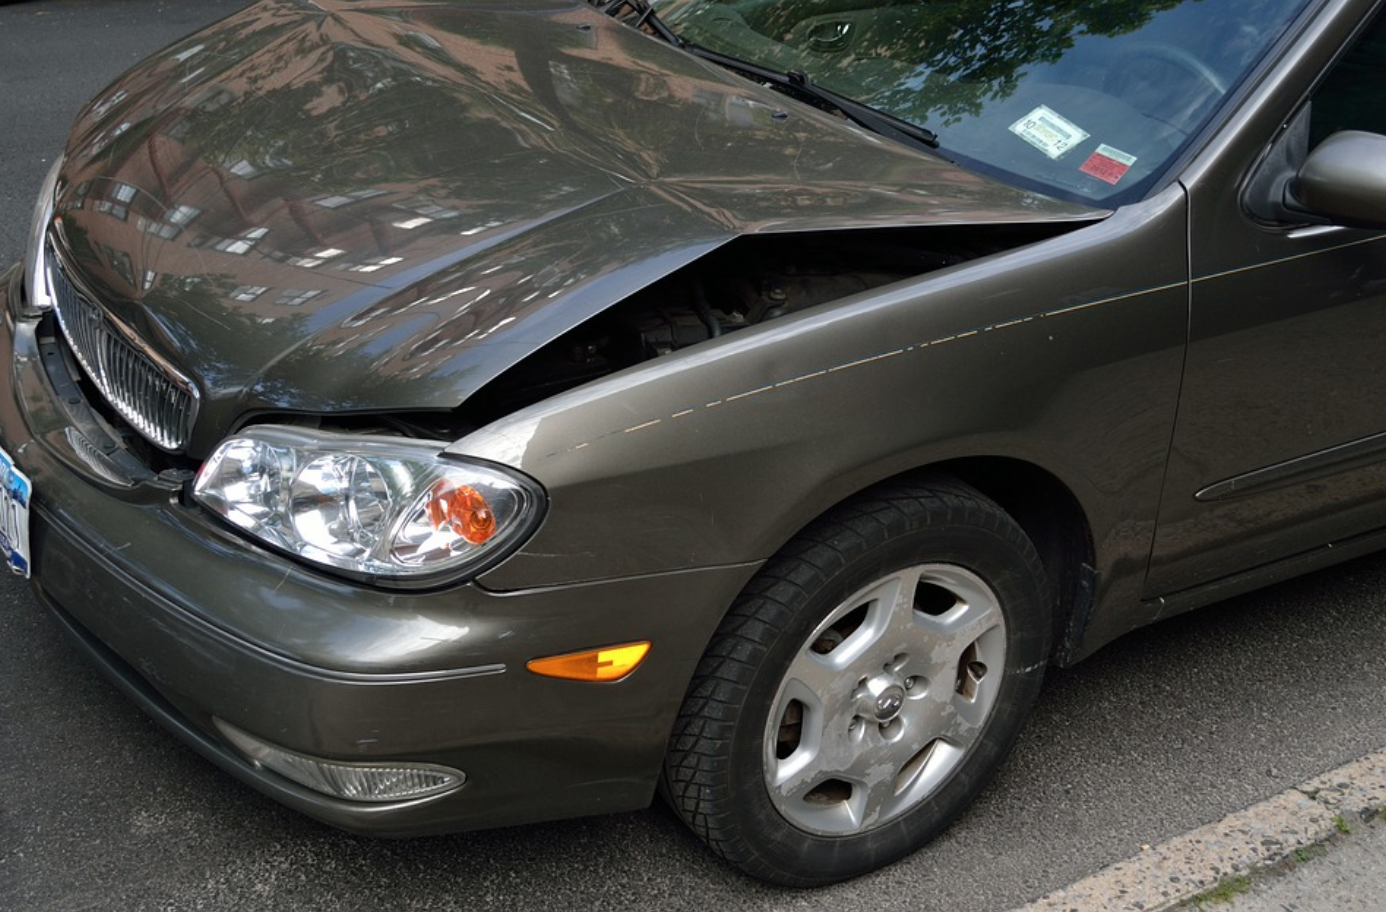 Car with dented hood; image by Artistic Impressions, via Pixabay.com.